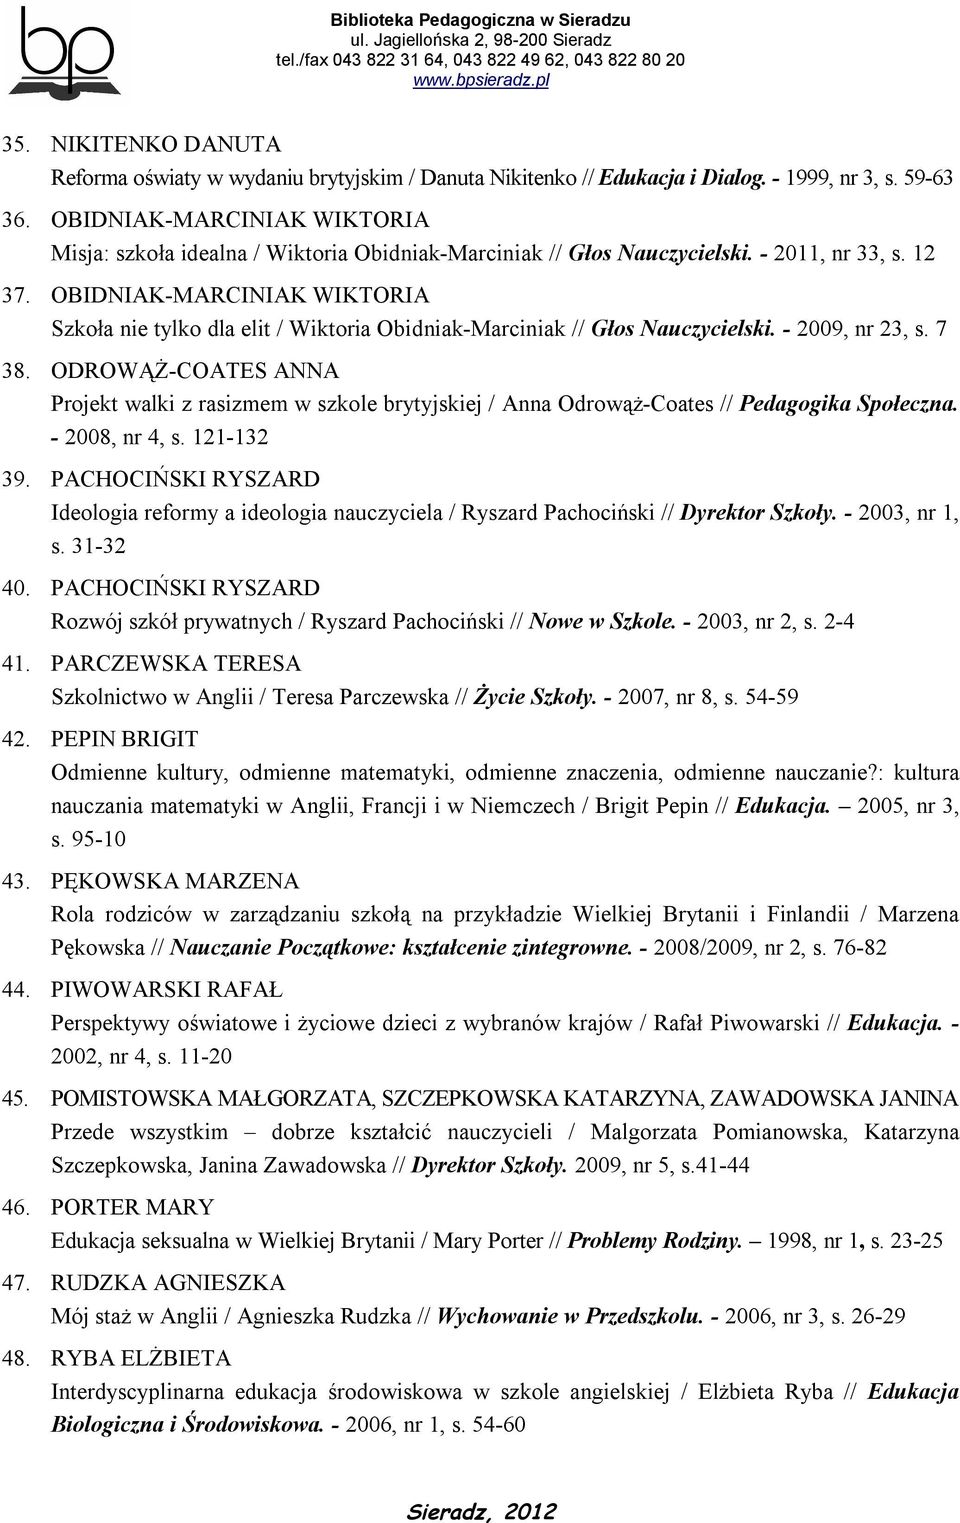 OBIDNIAK-MARCINIAK WIKTORIA Szkoła nie tylko dla elit / Wiktoria Obidniak-Marciniak // Głos Nauczycielski. - 2009, nr 23, s. 7 38.